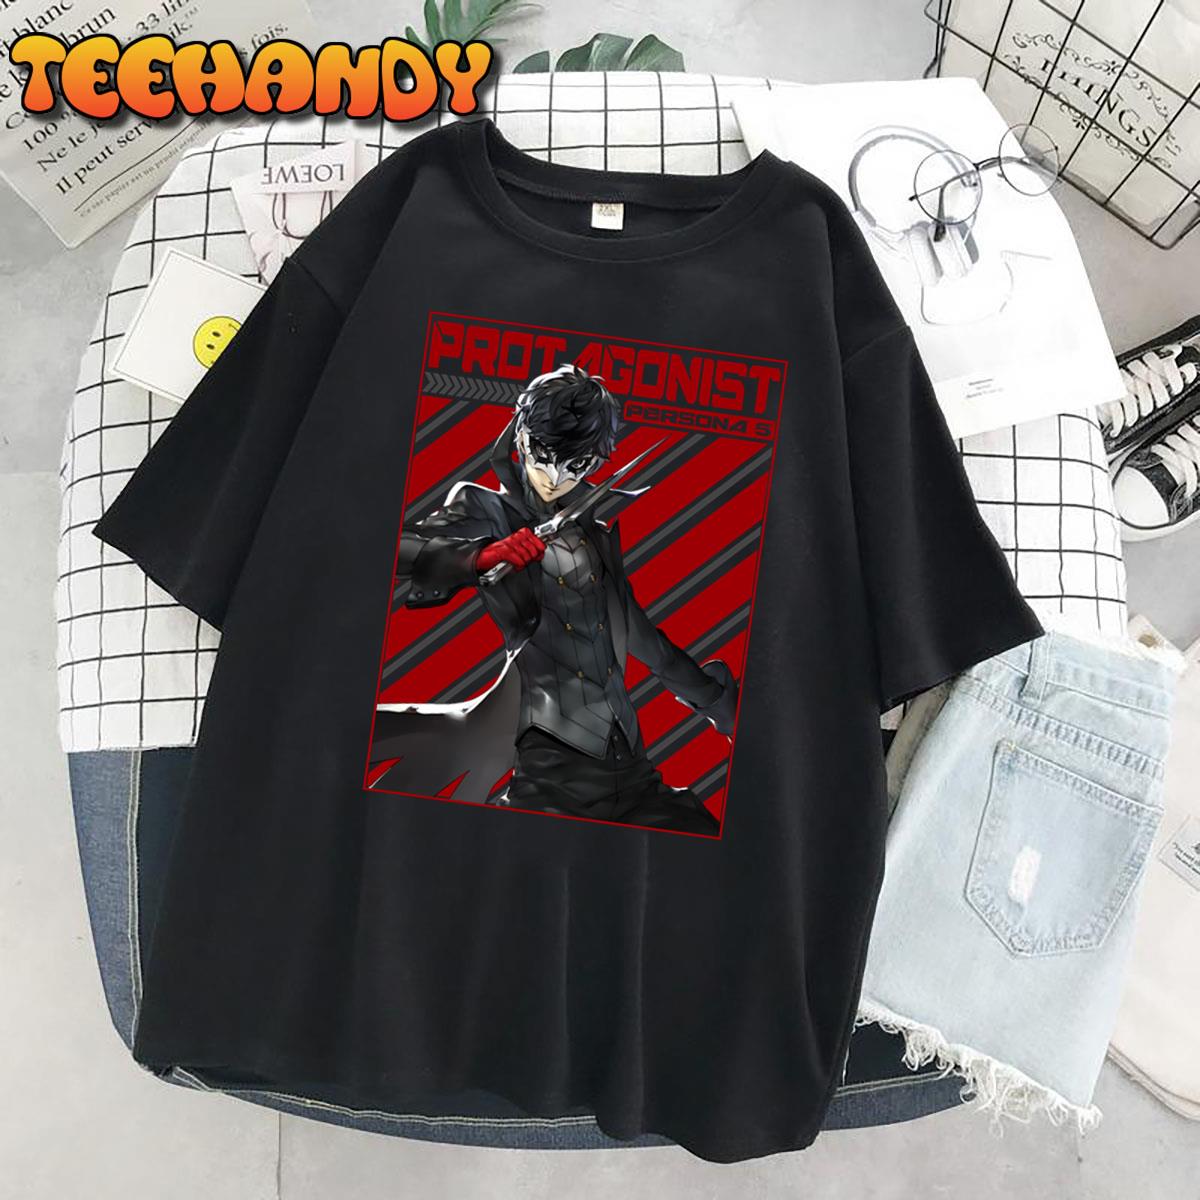 Persona 5 Protagonist Phantom Thieve Unisex T-Shirt